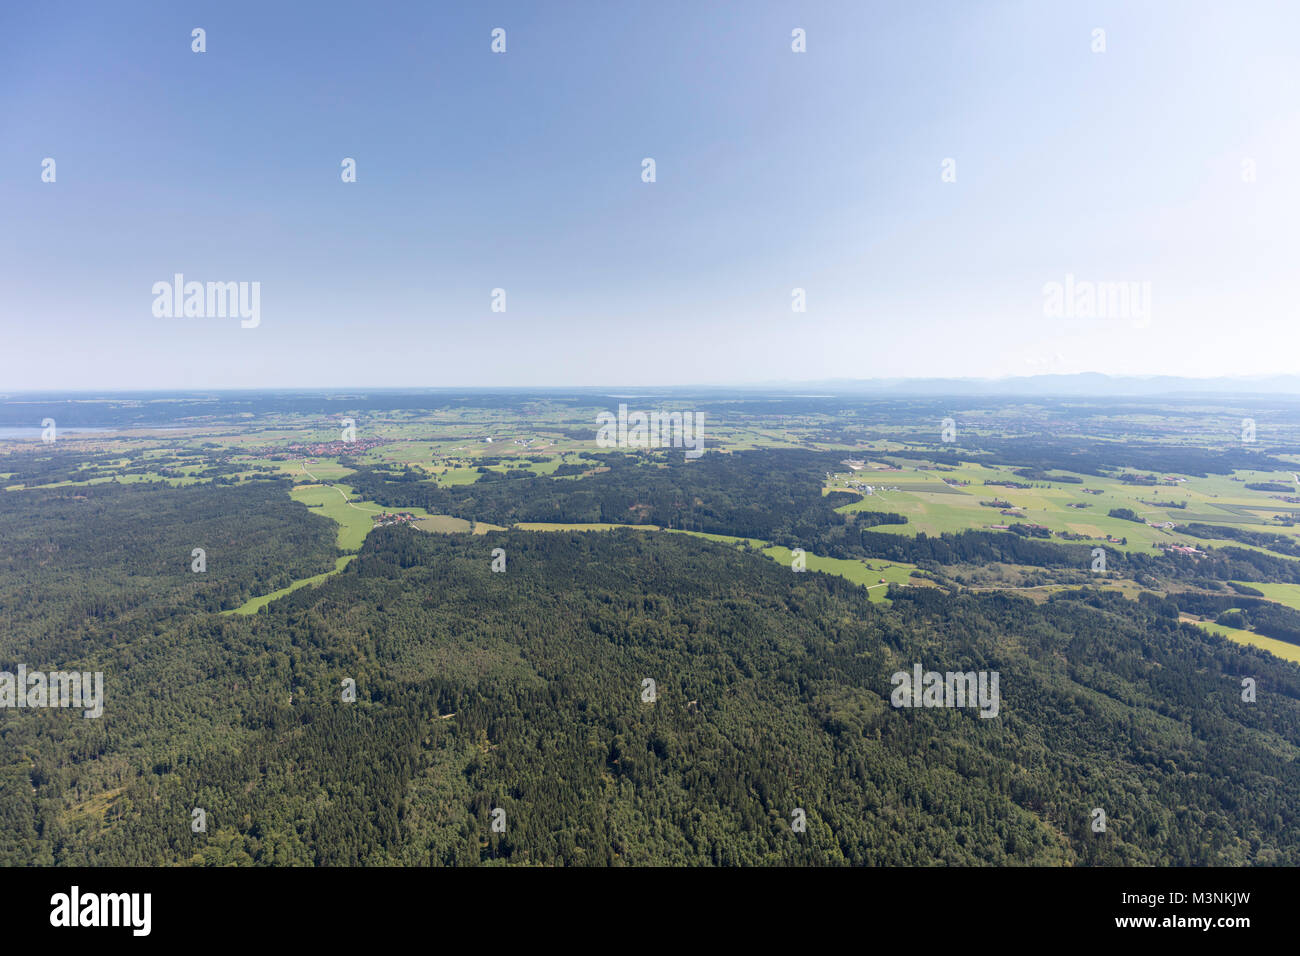 Luftaufnahme des Deutschen Zentrums für Luft- und Raumfahrt in Weilheim und Erdfunkstelle Raisting, Bayern, Deutschland Stockfoto